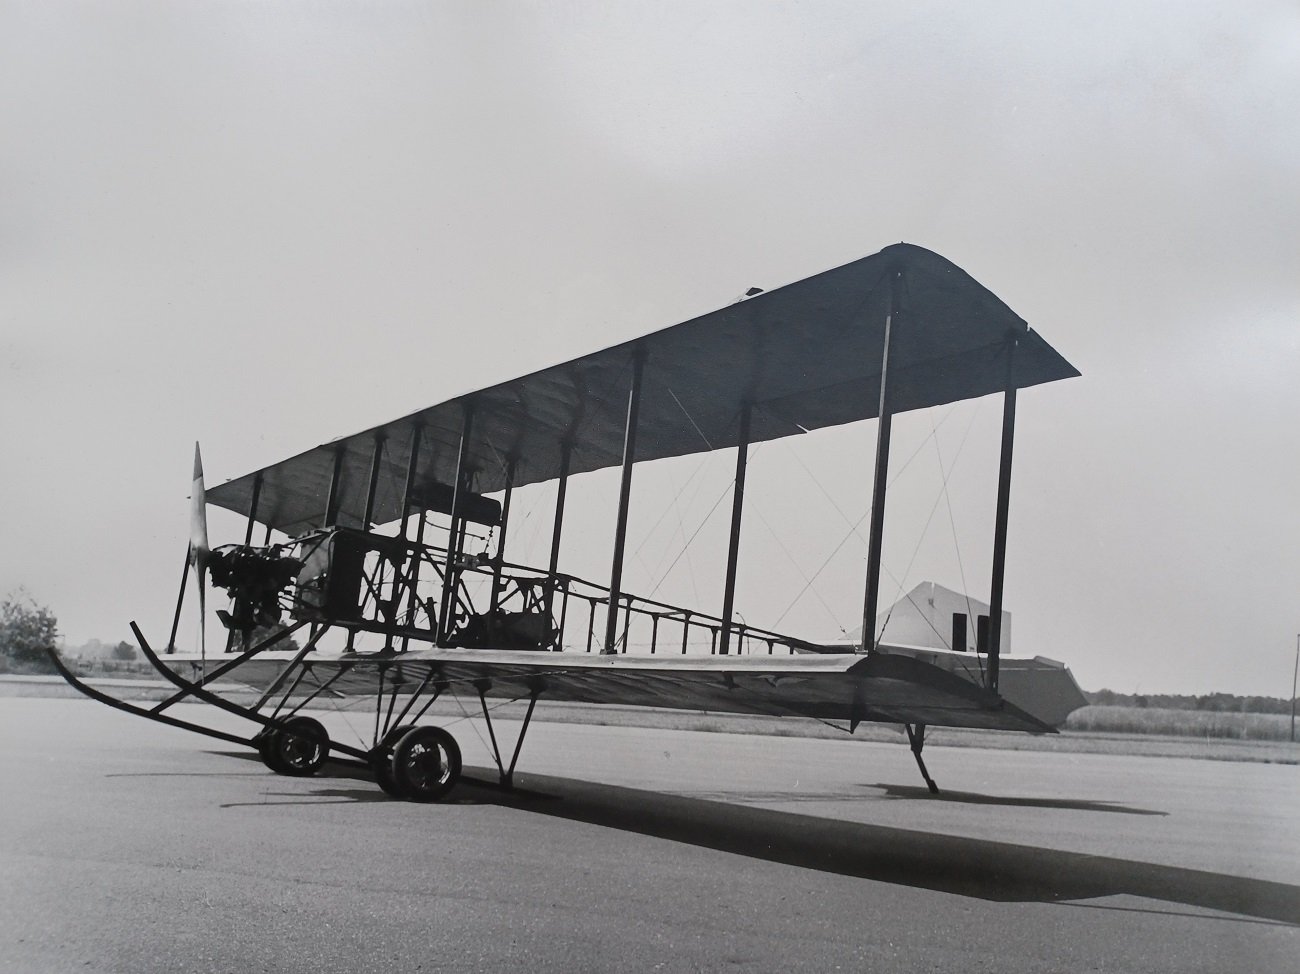 ESCH, Winfried (Fotograf):  3 großformatige Original-Photographien eines historischen Flugzeugs oder Flugzeugnachbaus. (Historische Photographien eines Doppeldecker-Flugzeugs aus den Anfängen der Fluggeschichte). 